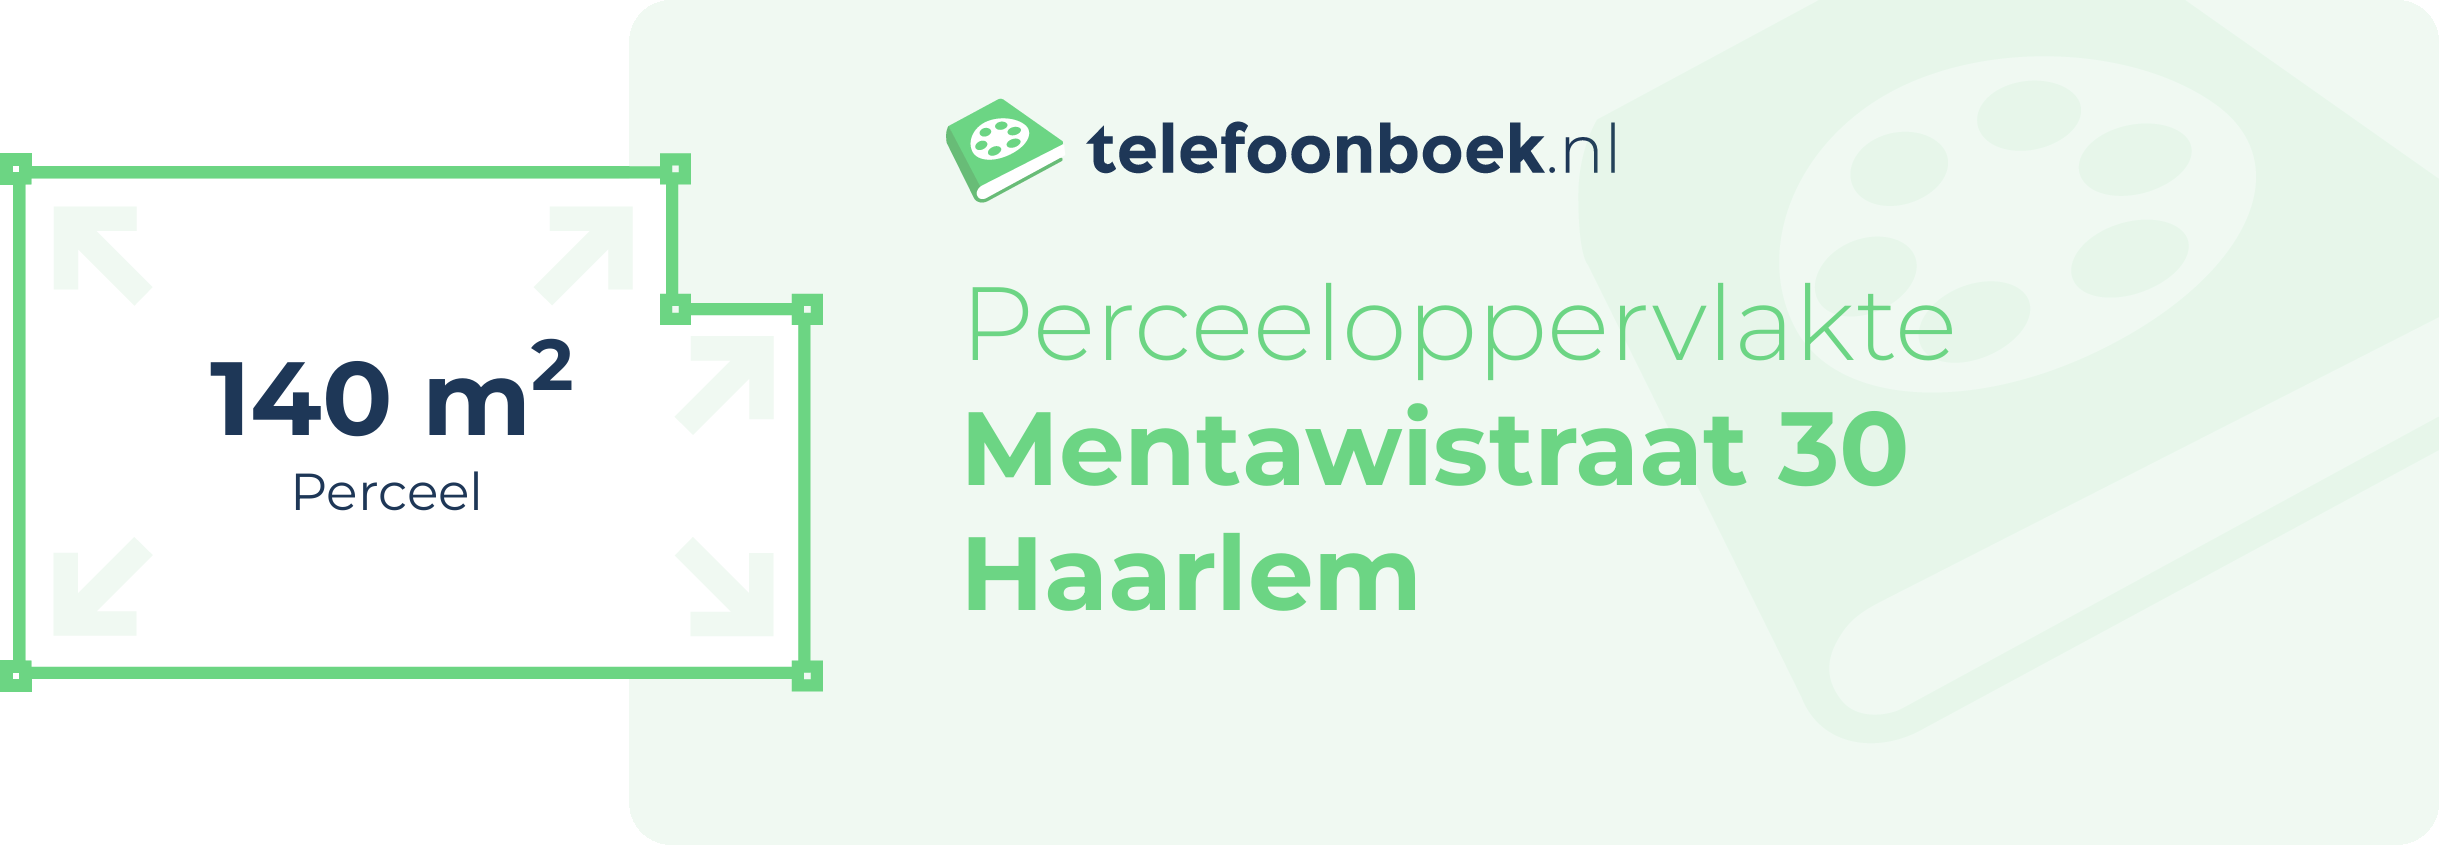 Perceeloppervlakte Mentawistraat 30 Haarlem